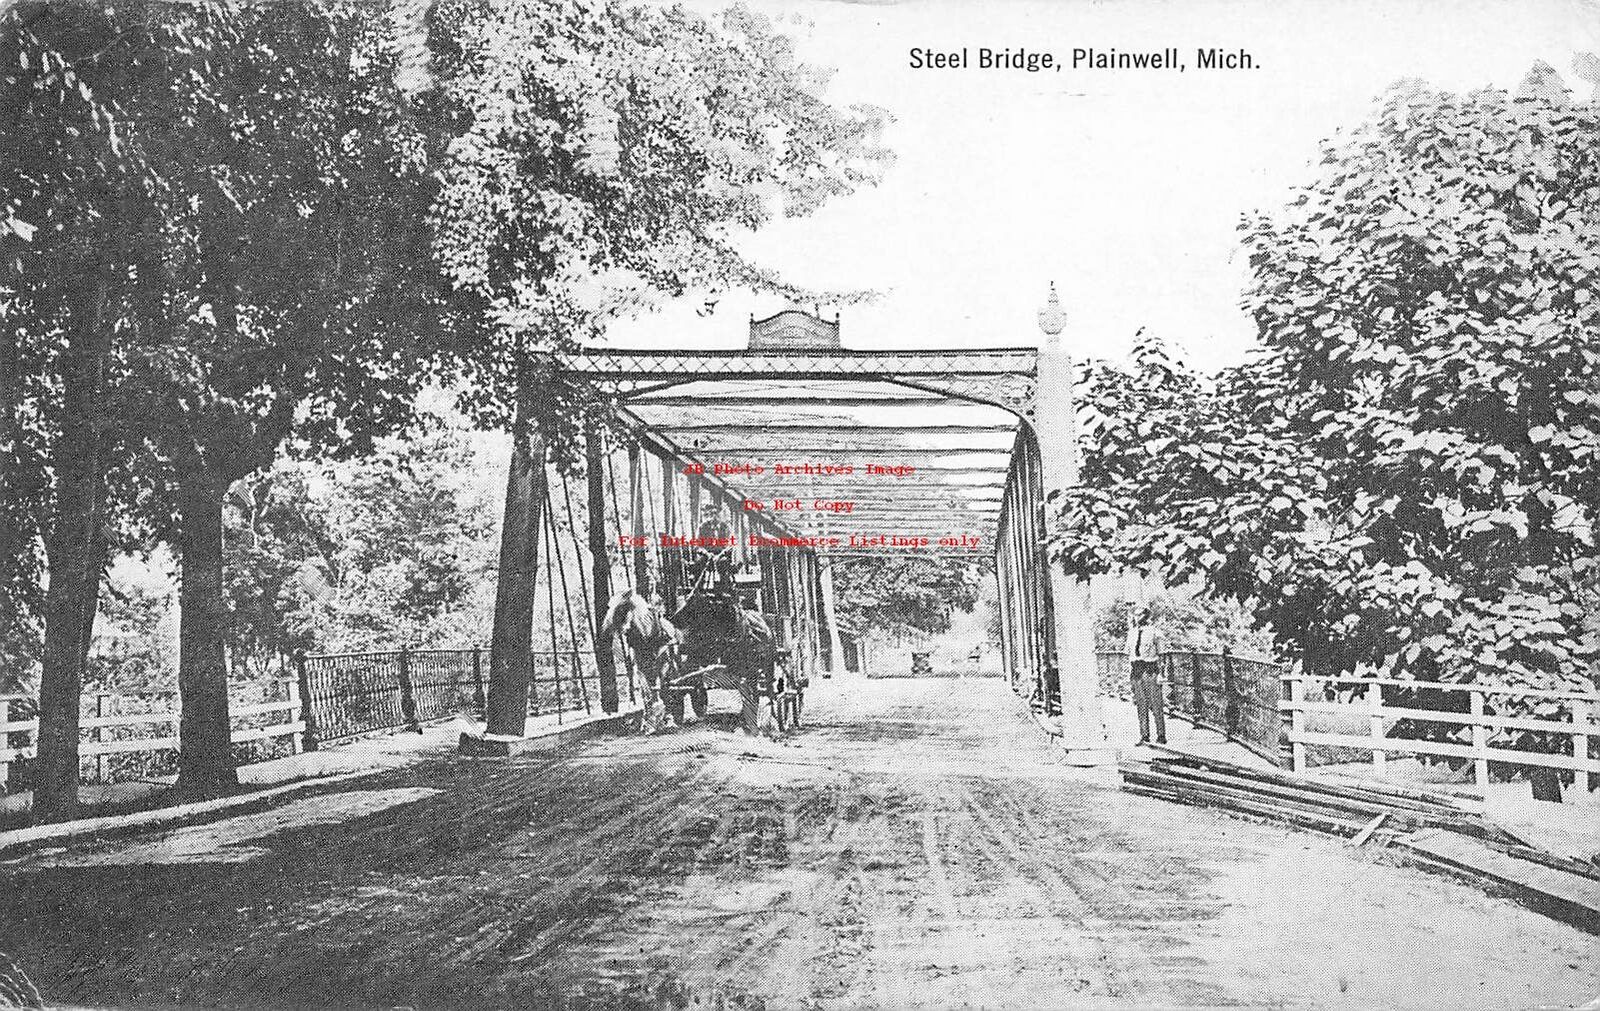 MI, Plainwell, Michigan, Steel Bridge, 1920 PM